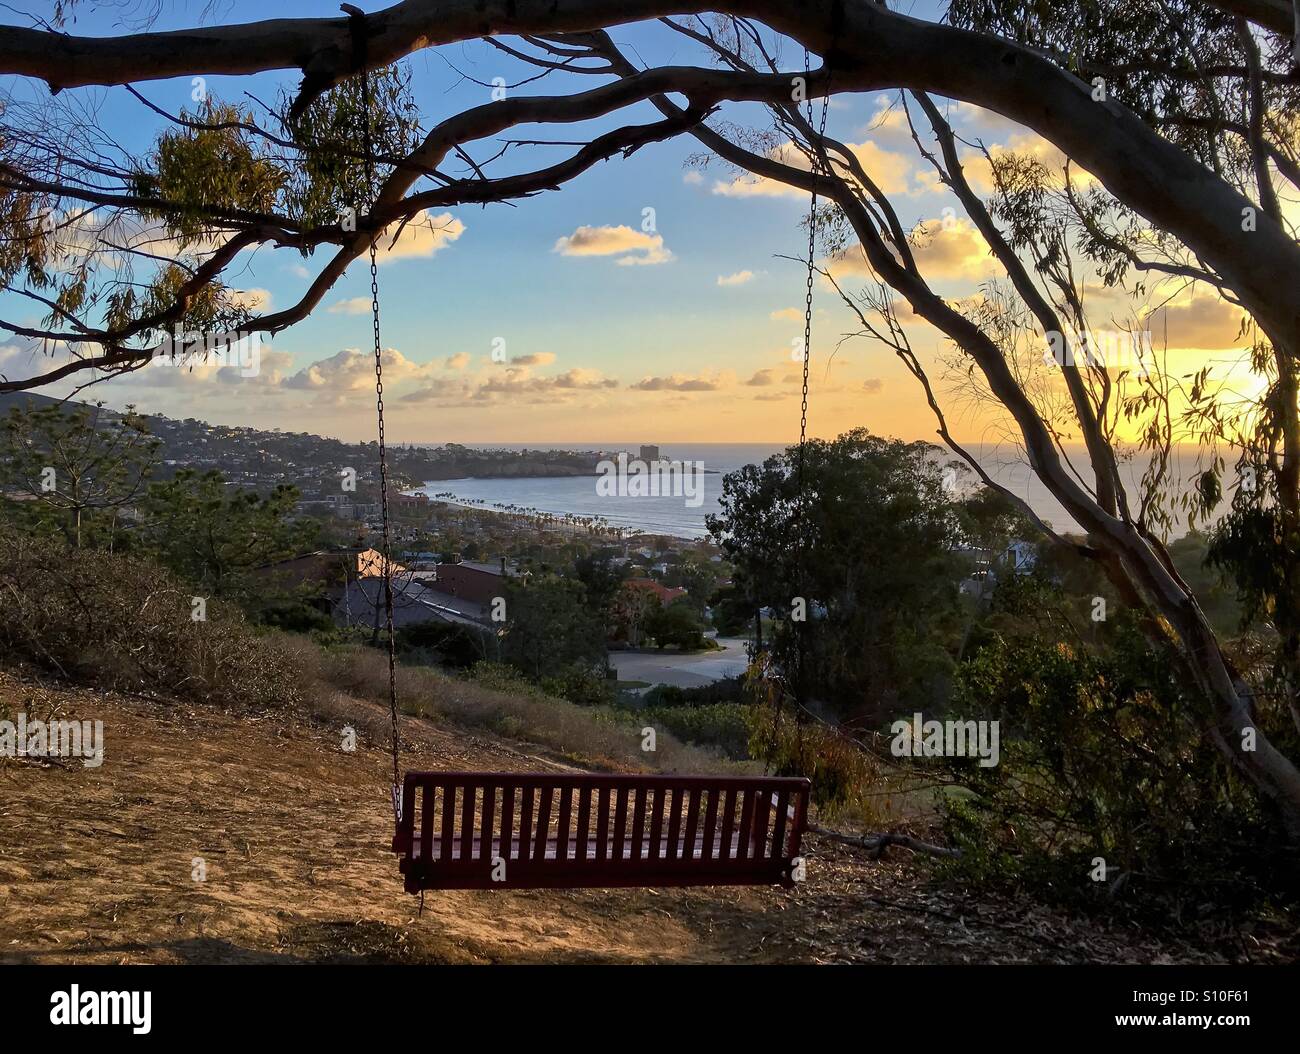 Rustico vuoto panca in legno swing appeso a un albero con una vista perfetta che si affacciano sull'oceano al tramonto. Prese a La Jolla, California, Stati Uniti d'America. Foto Stock